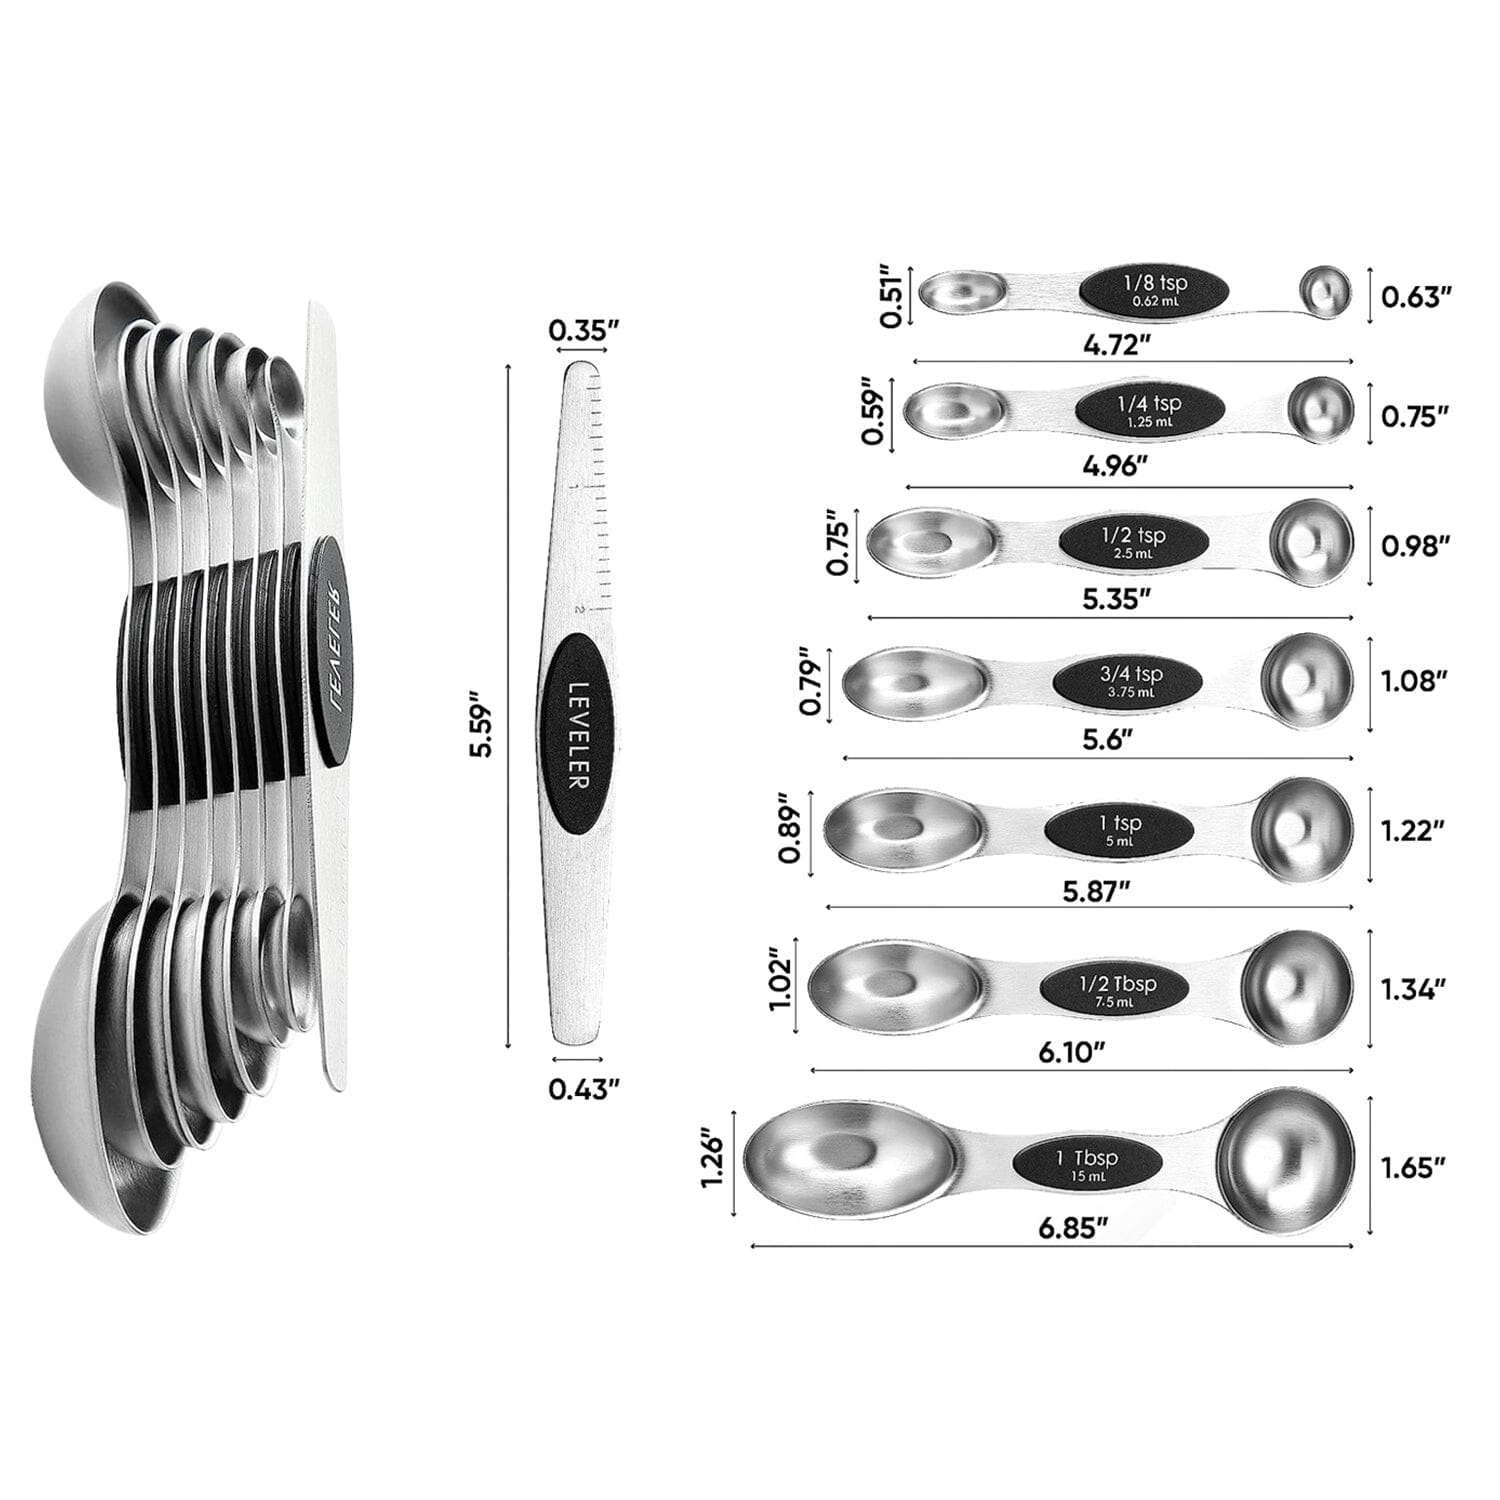 Black Measuring Spoons - Set of 7 Includes Leveler - Premium